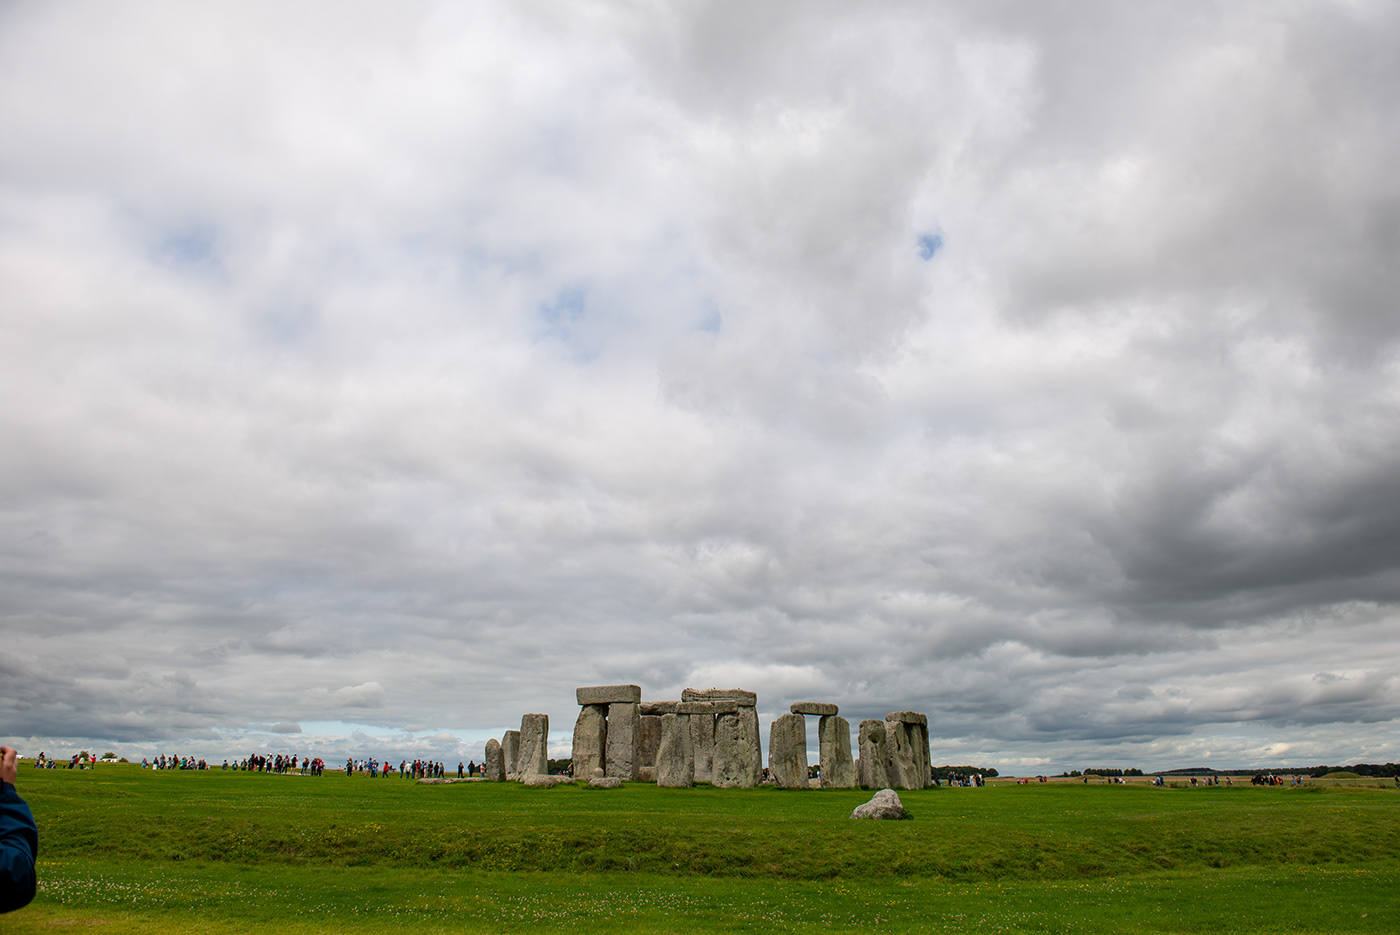 Photography  high dynamic range Landscape history English Heritage hdr photography stonehenge